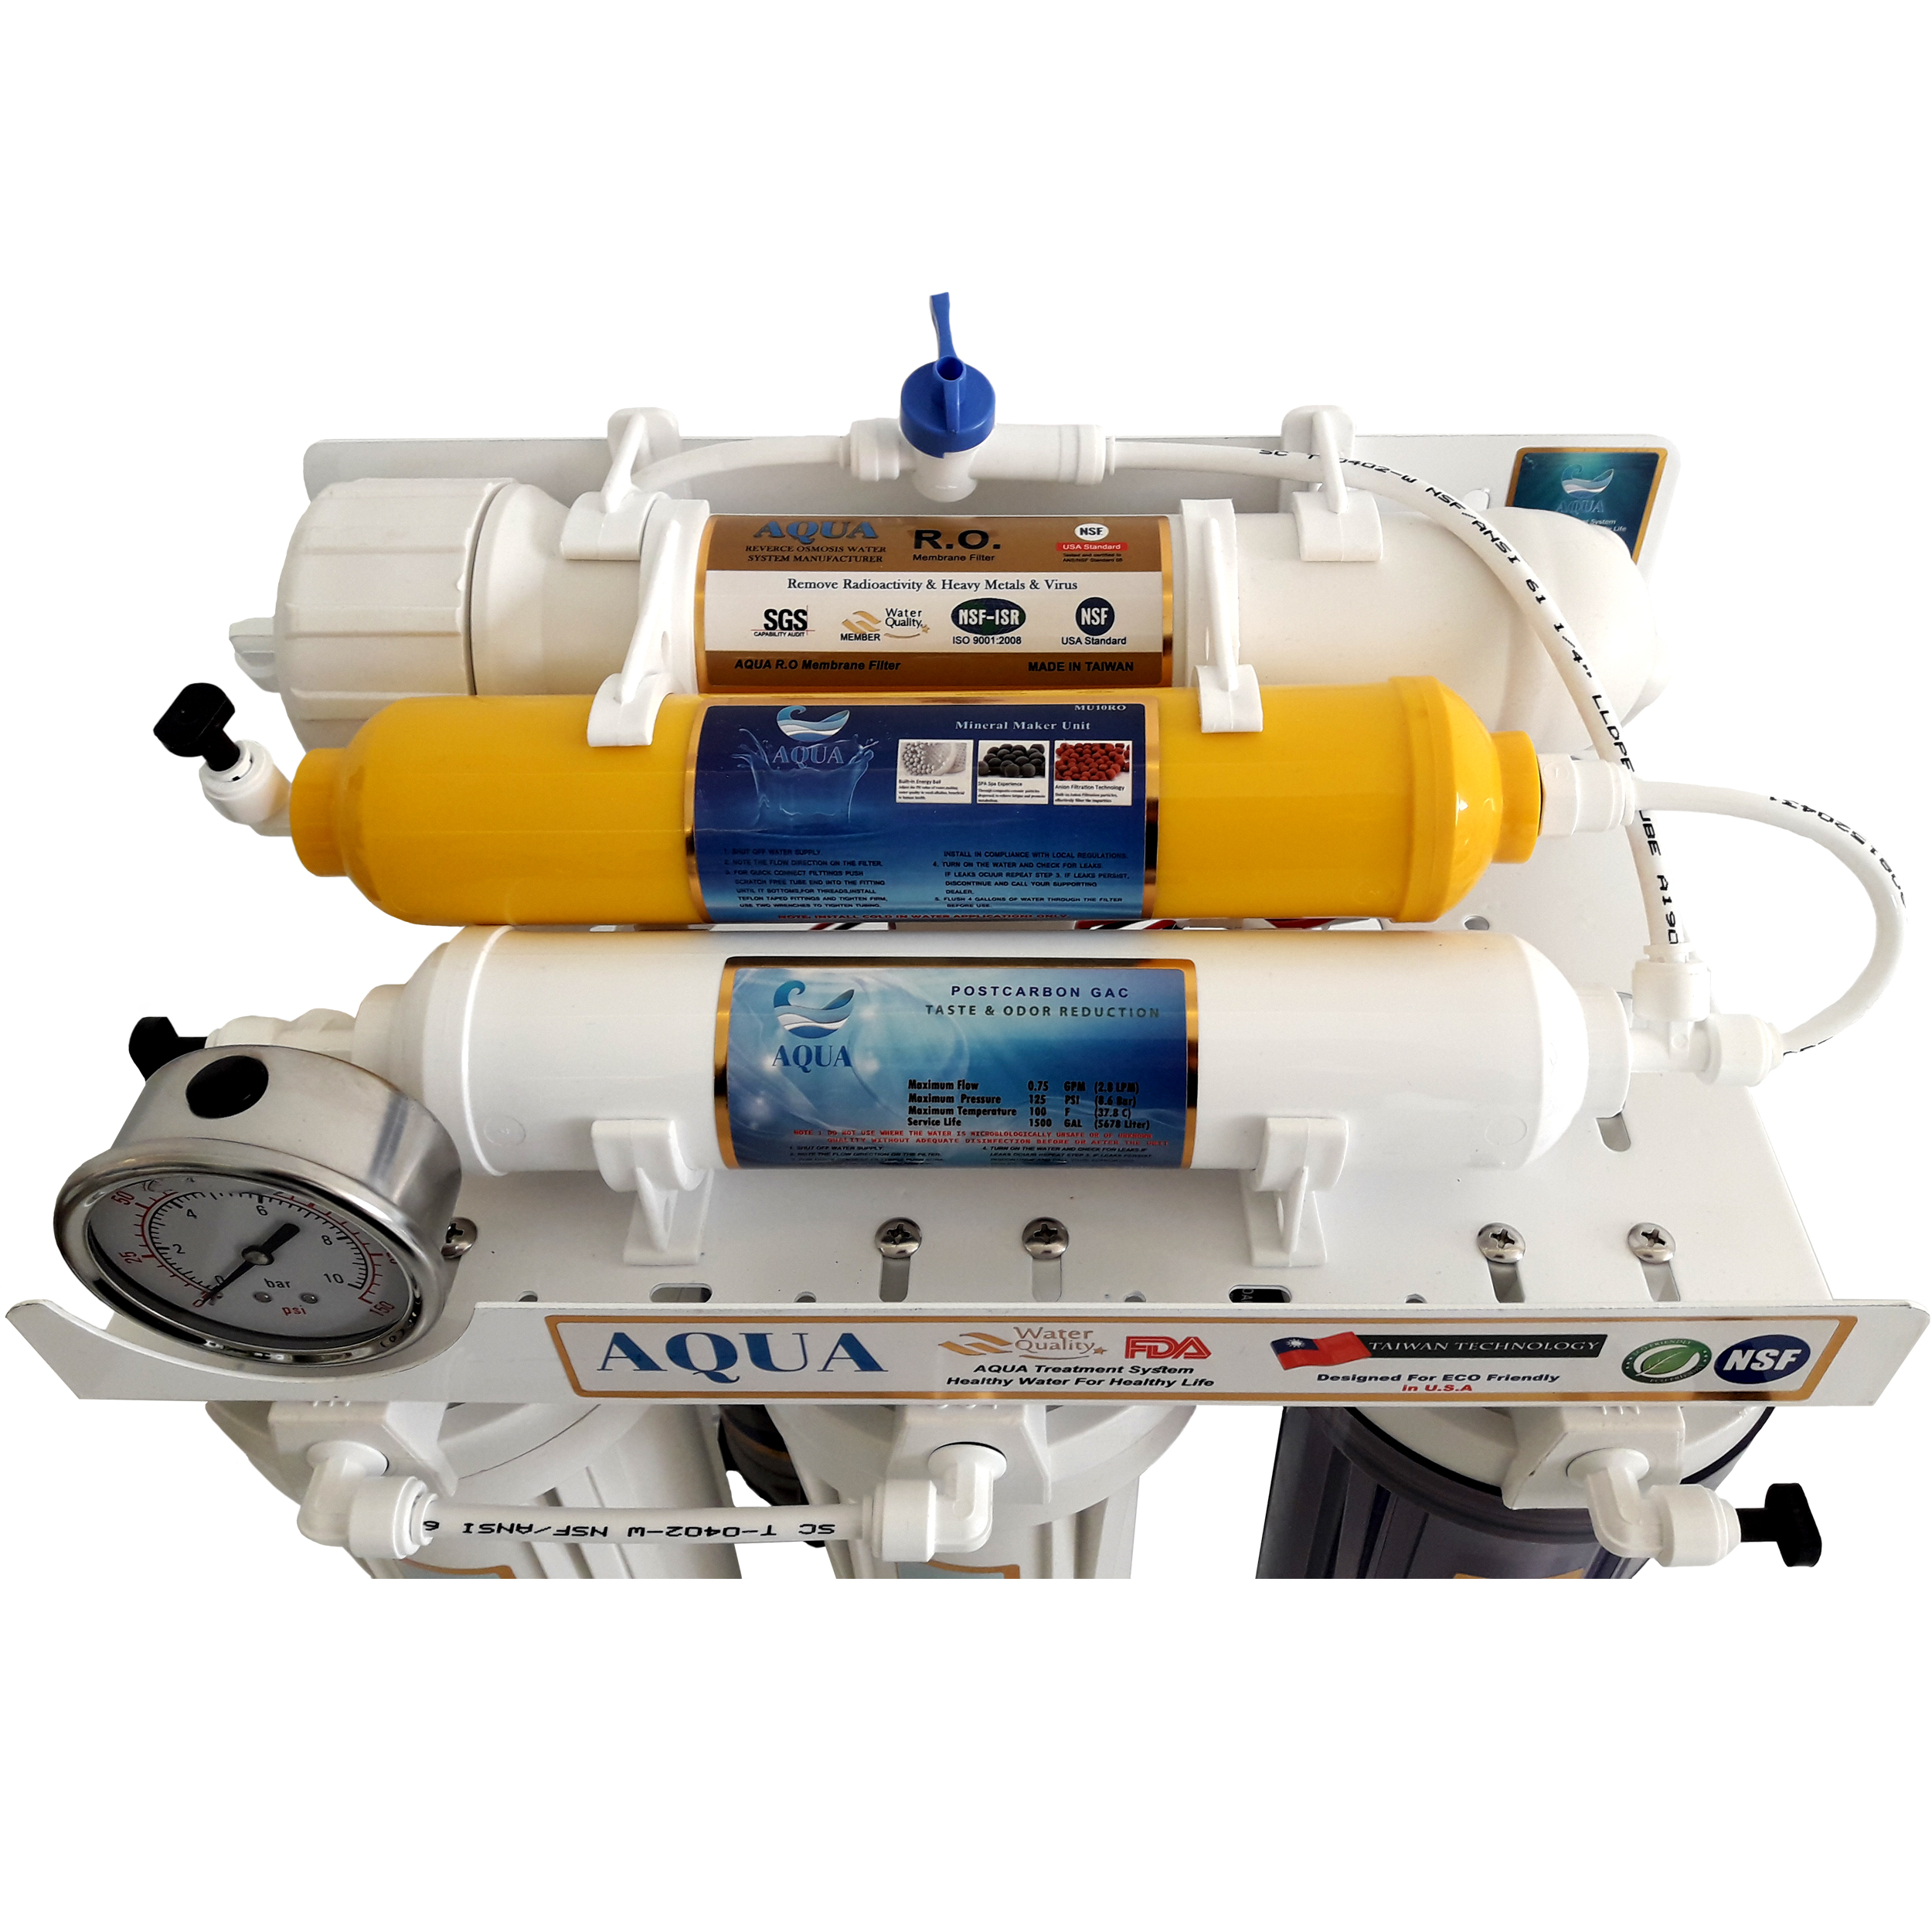 دستگاه تصفیه کننده آب آکوا مدل AQUA JOY WATER Ro6